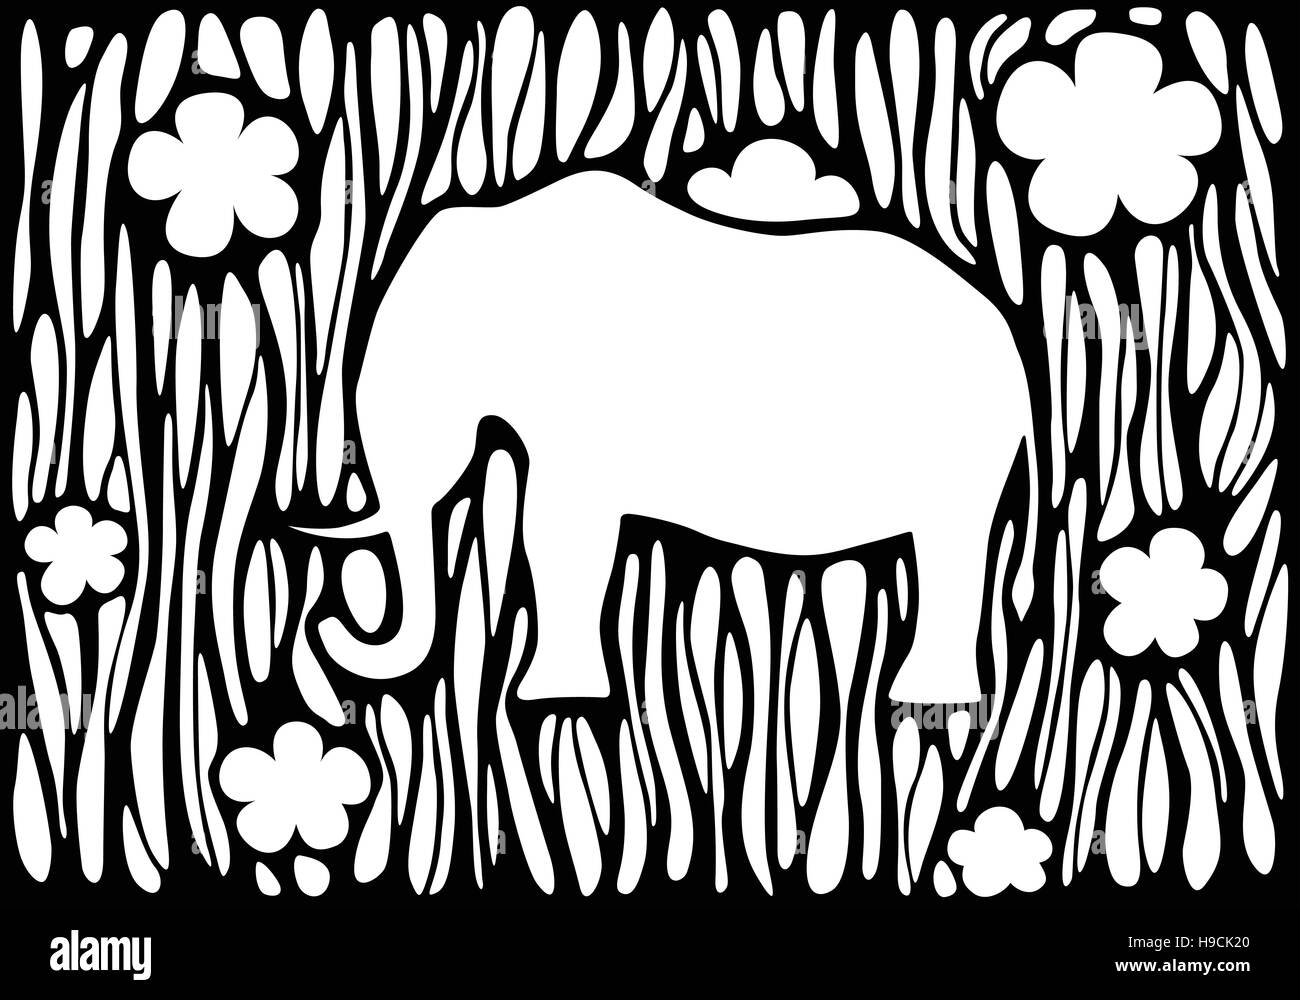 Grafischen Silhouette eines Elefanten auf einem abstrakten Hintergrund Stock Vektor